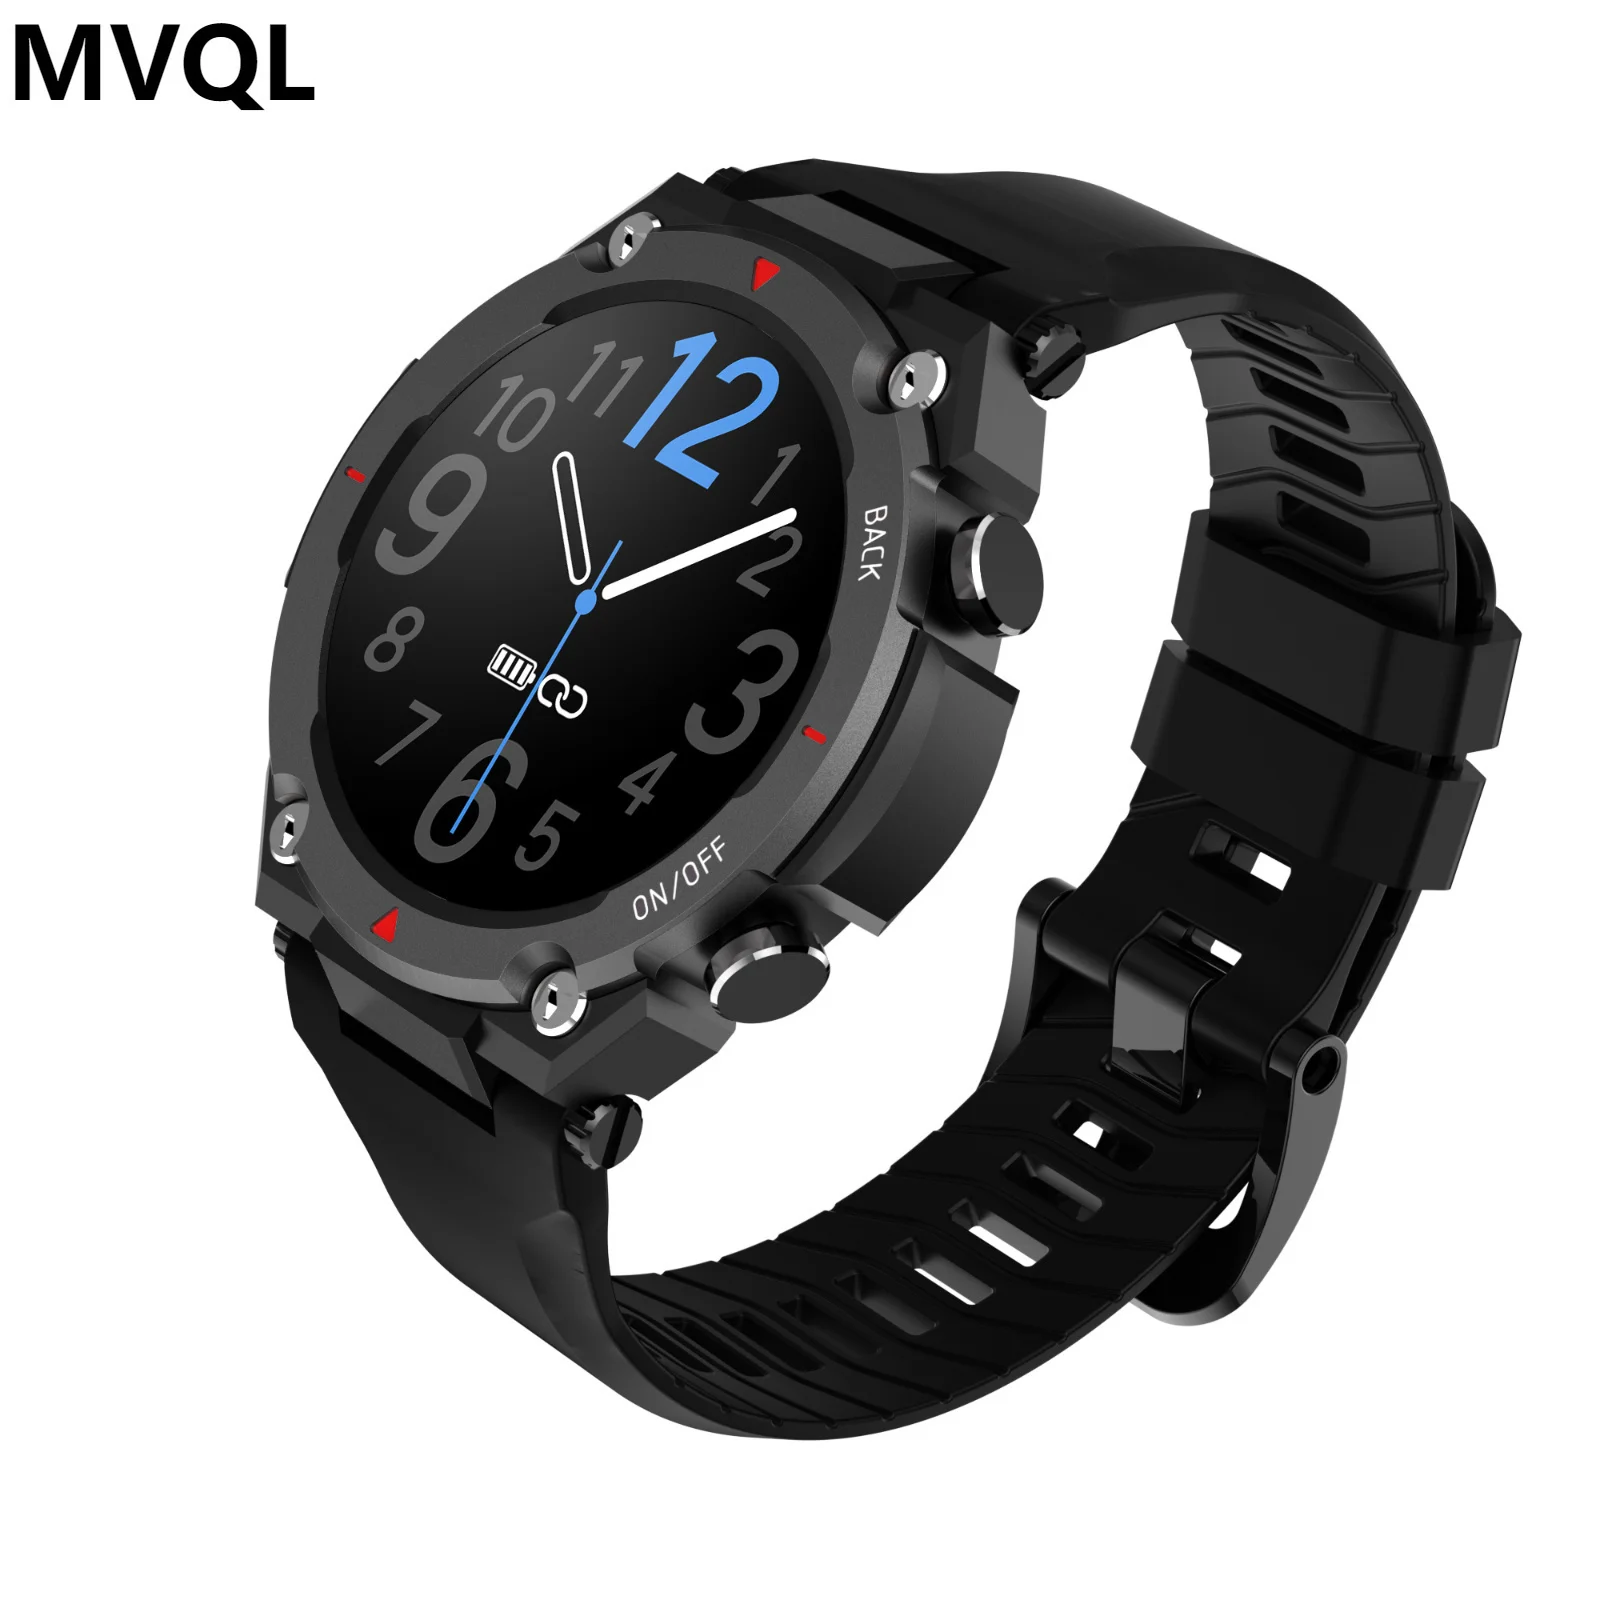 

Мужские Смарт-часы MVQL с большим аккумулятором, фитнес-трекер для воспроизведения музыки, Bluetooth, смарт-часы для IOS и Android, новинка 2023